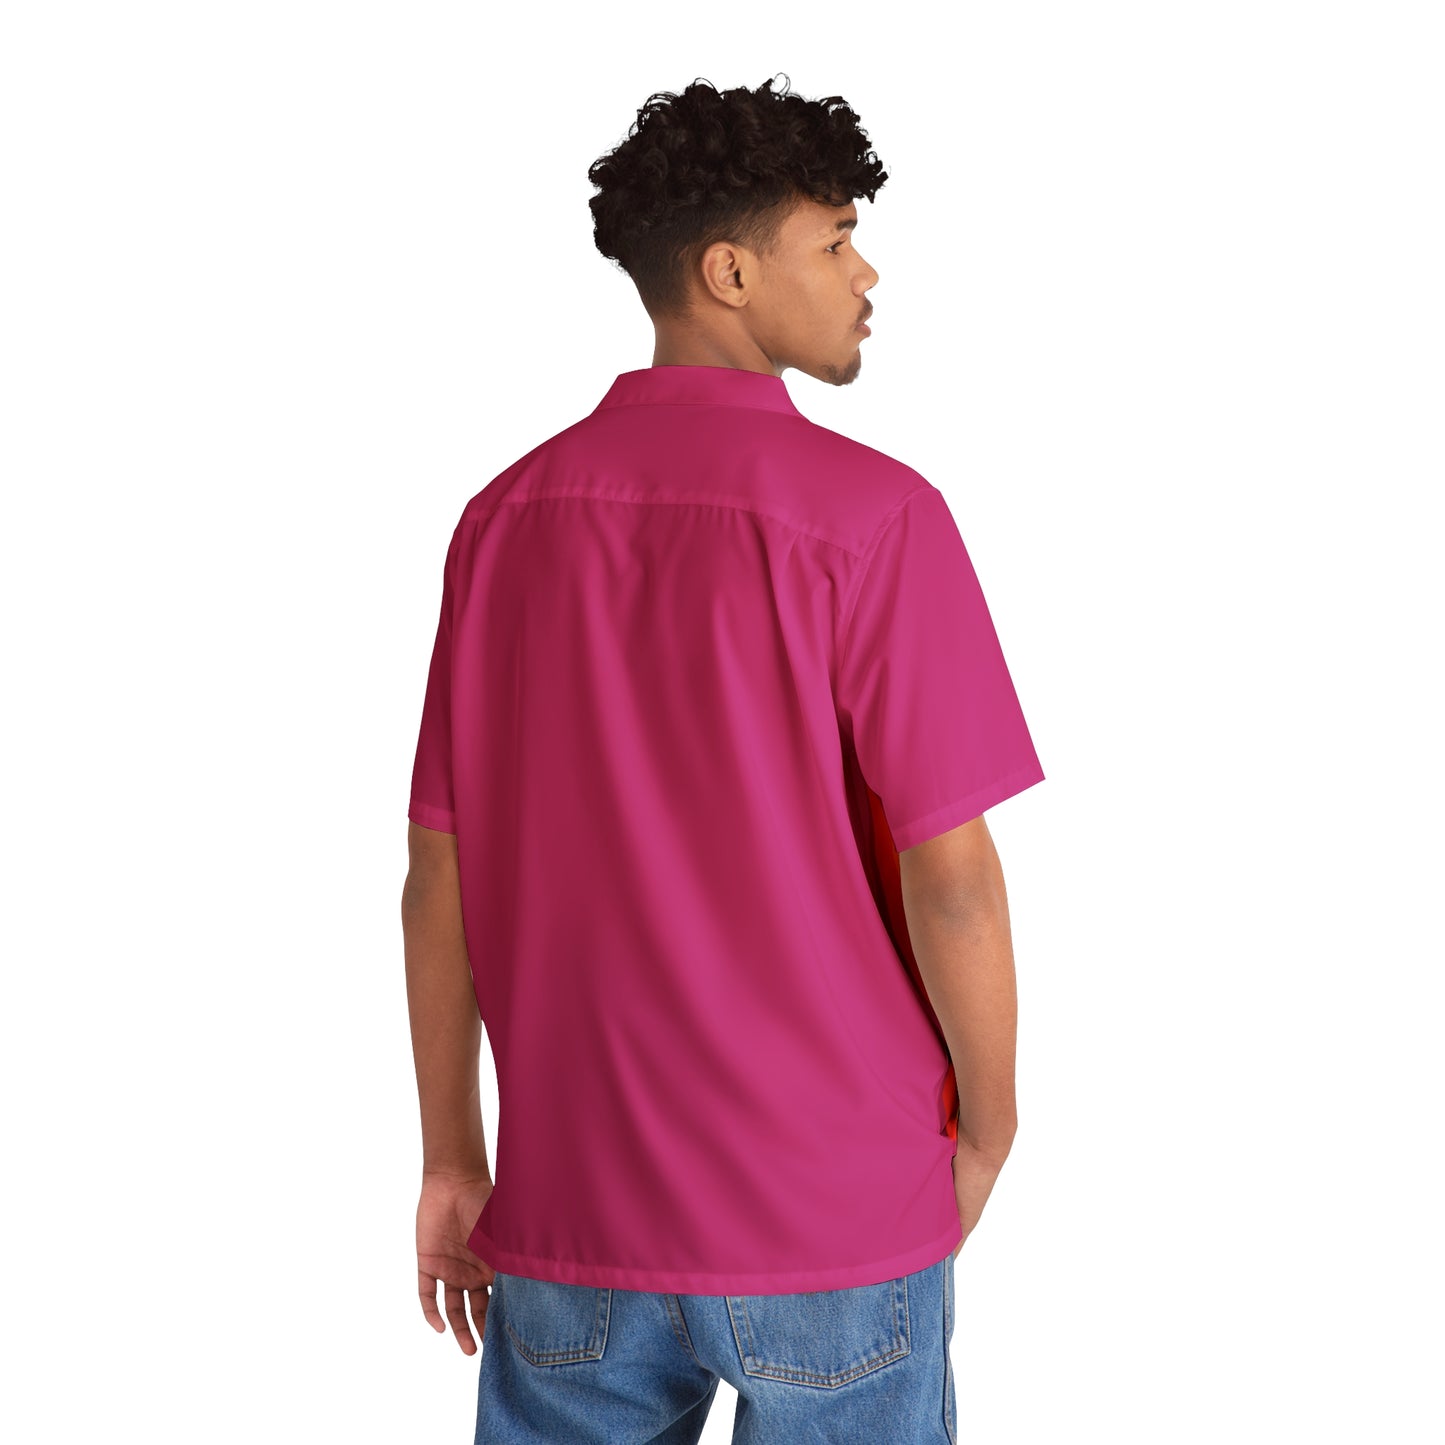 Pride - Pink #c42a86 - Men's Hawaiian Shirt